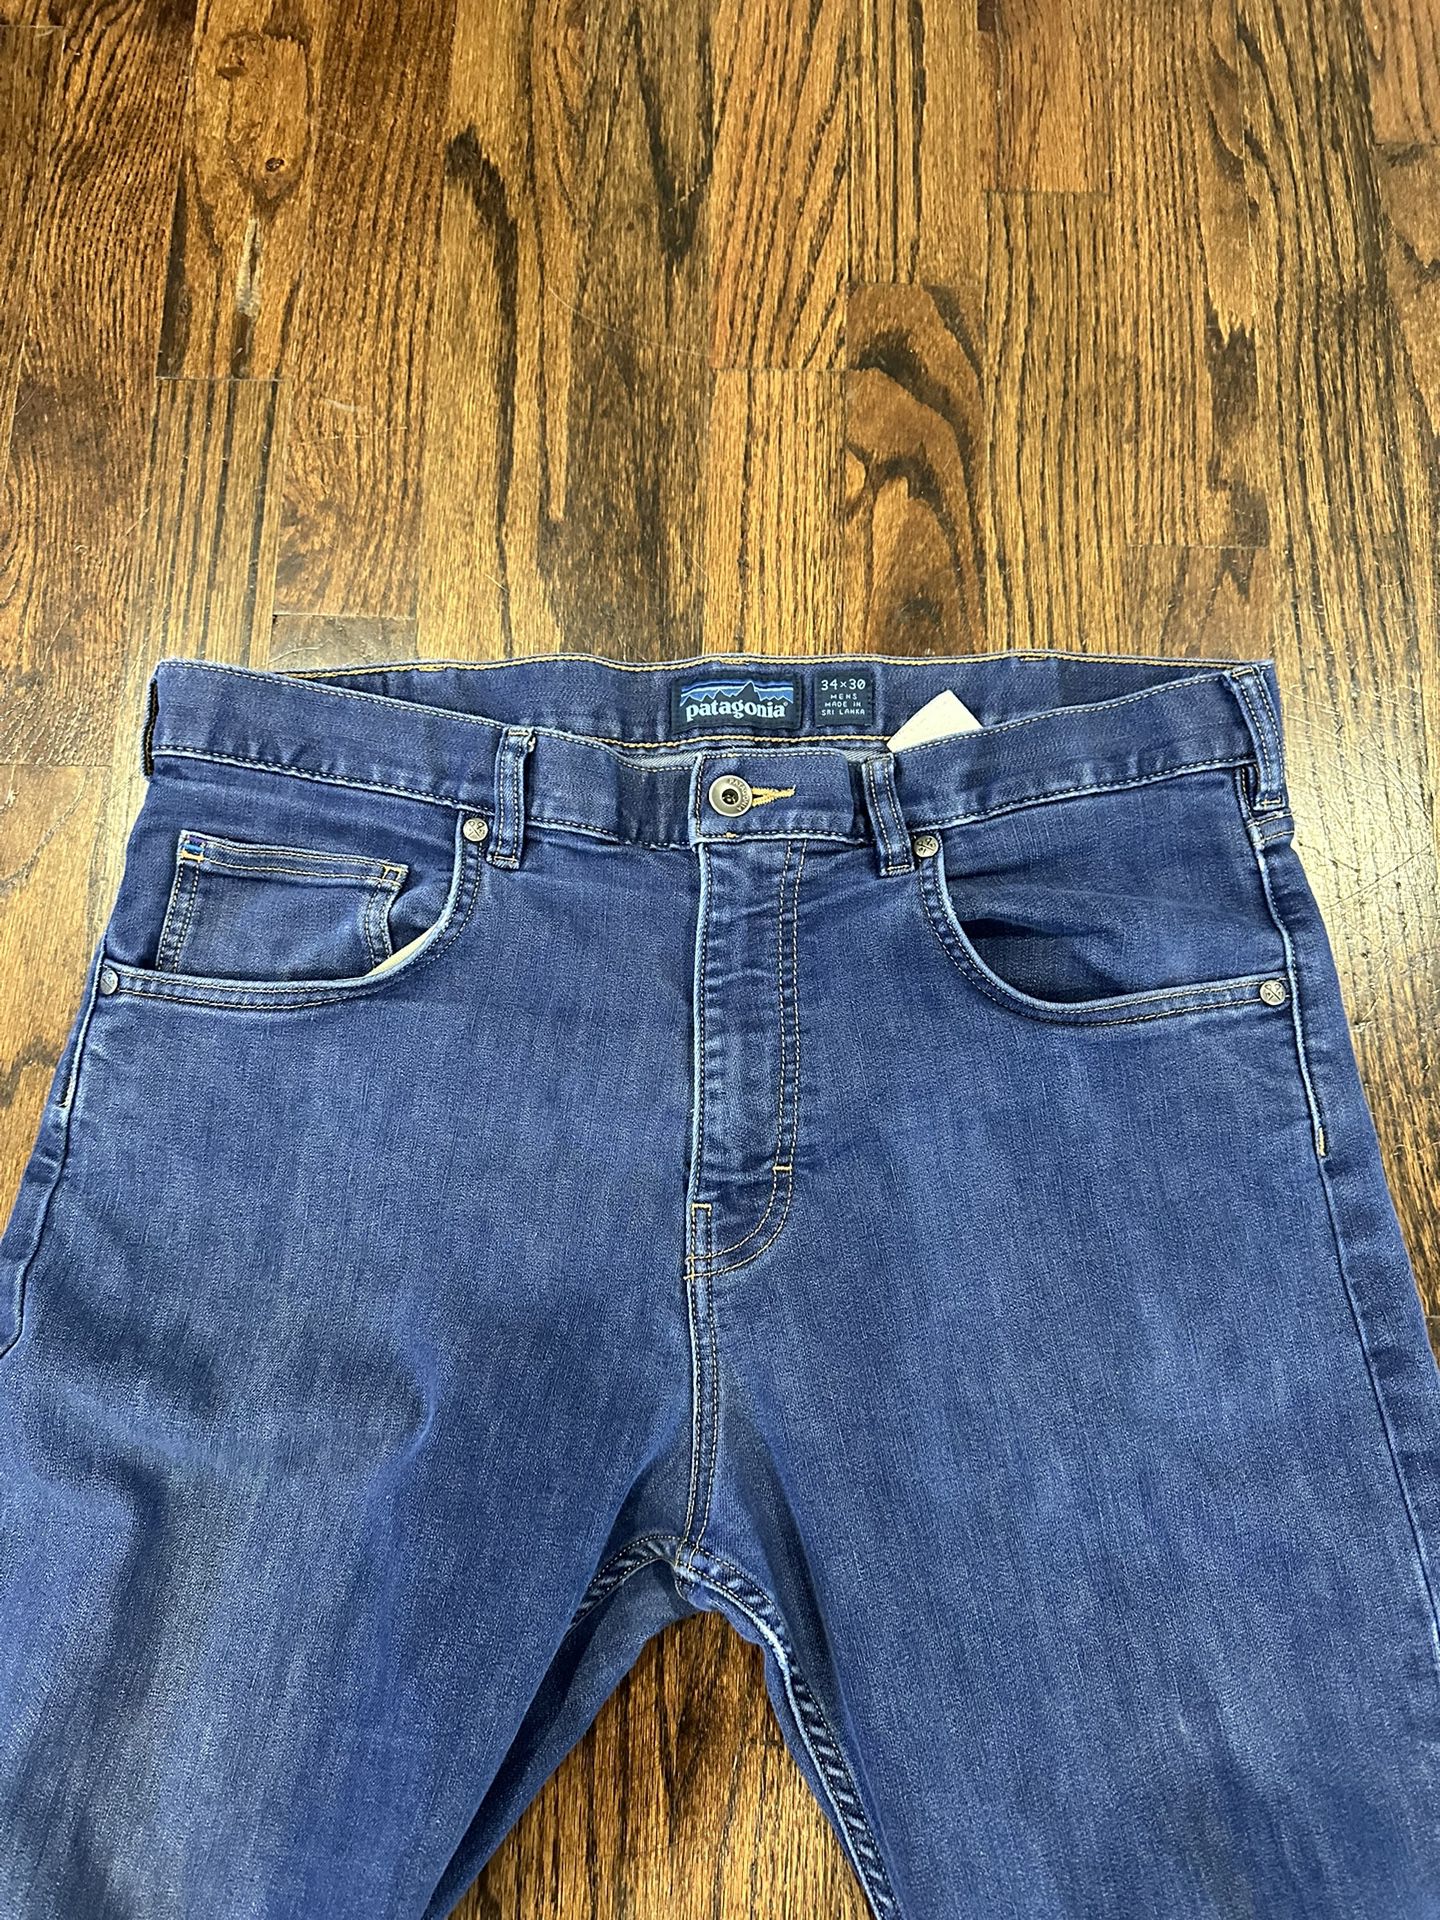 Patagonia Men’s Iron Clad Denim Jeans, Dark Blue/Navy Wash, Size 34x30